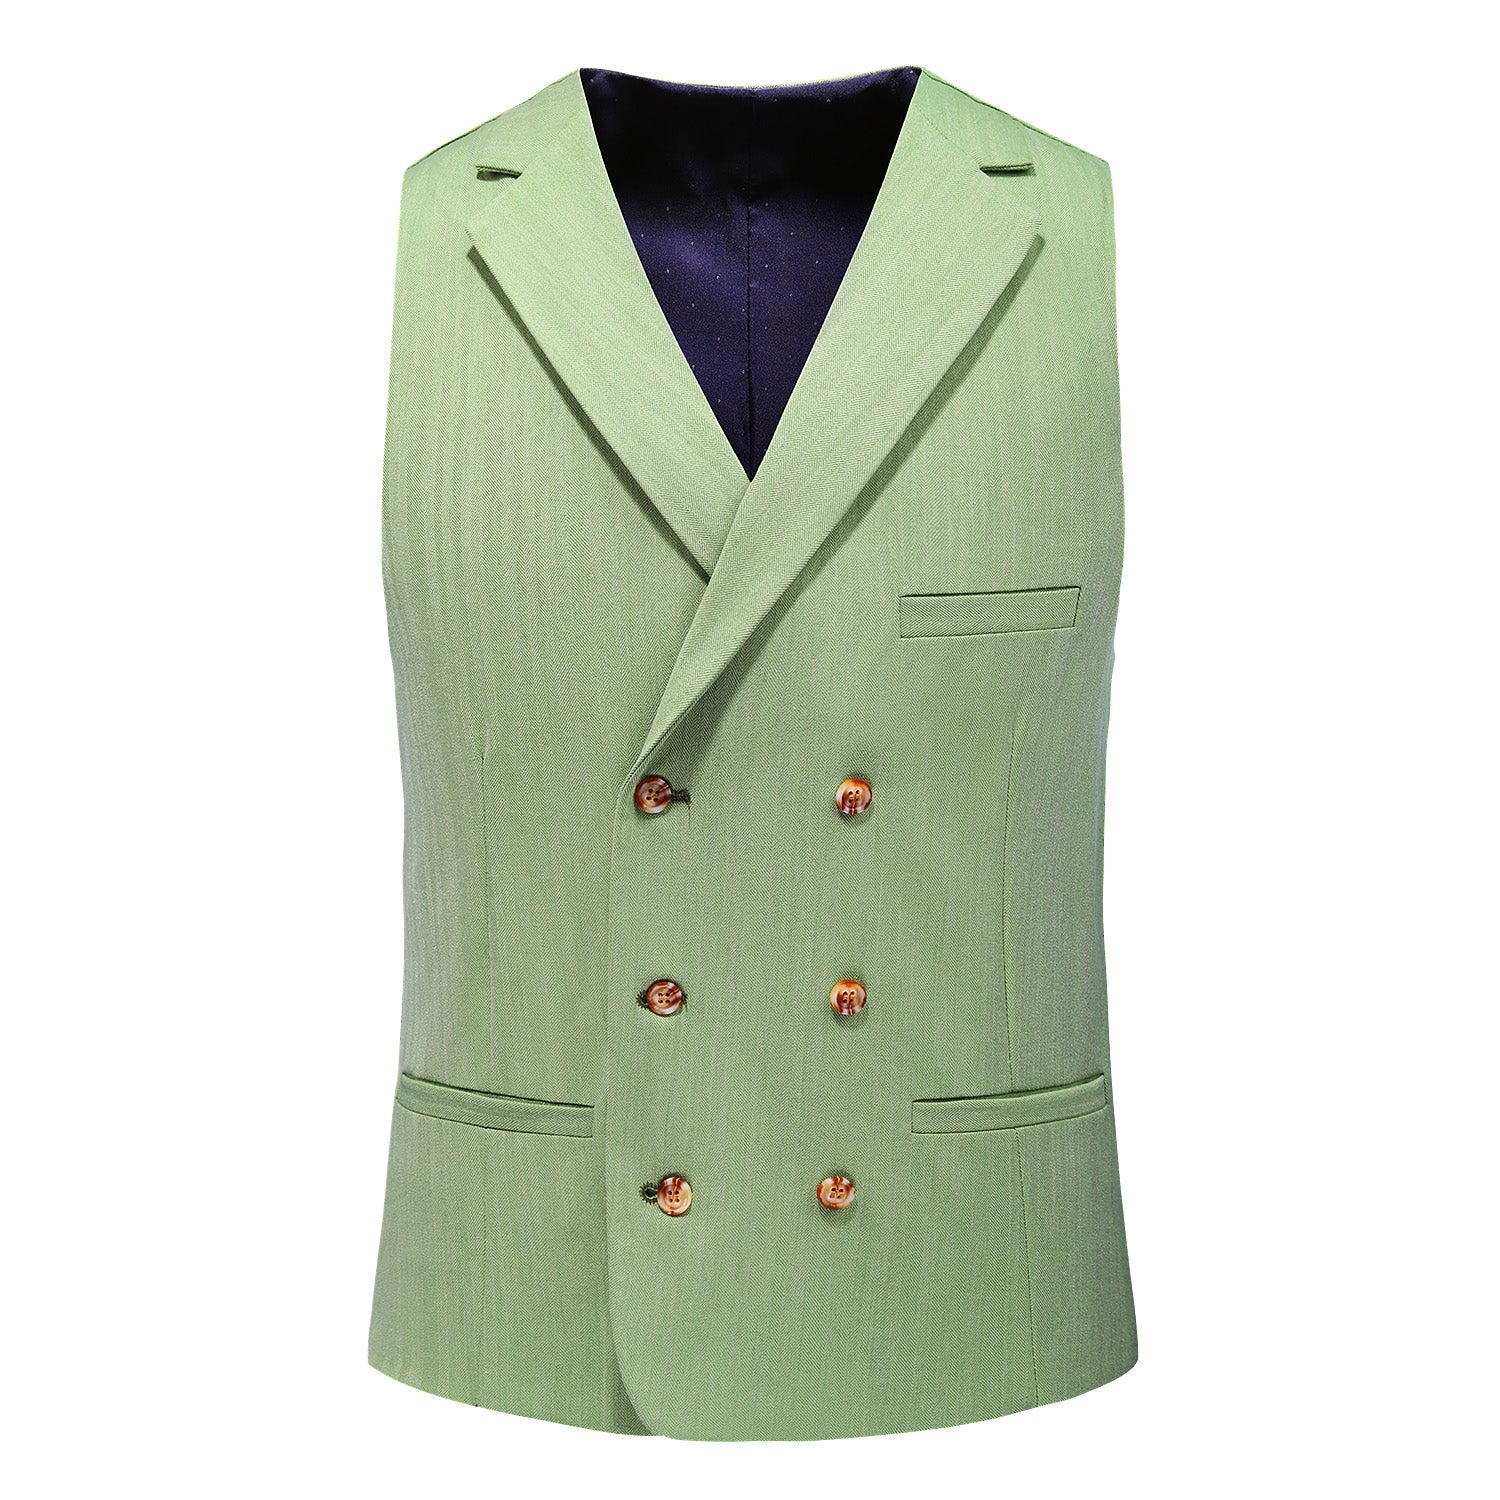 Men's Solid Green 3 Piece Suit